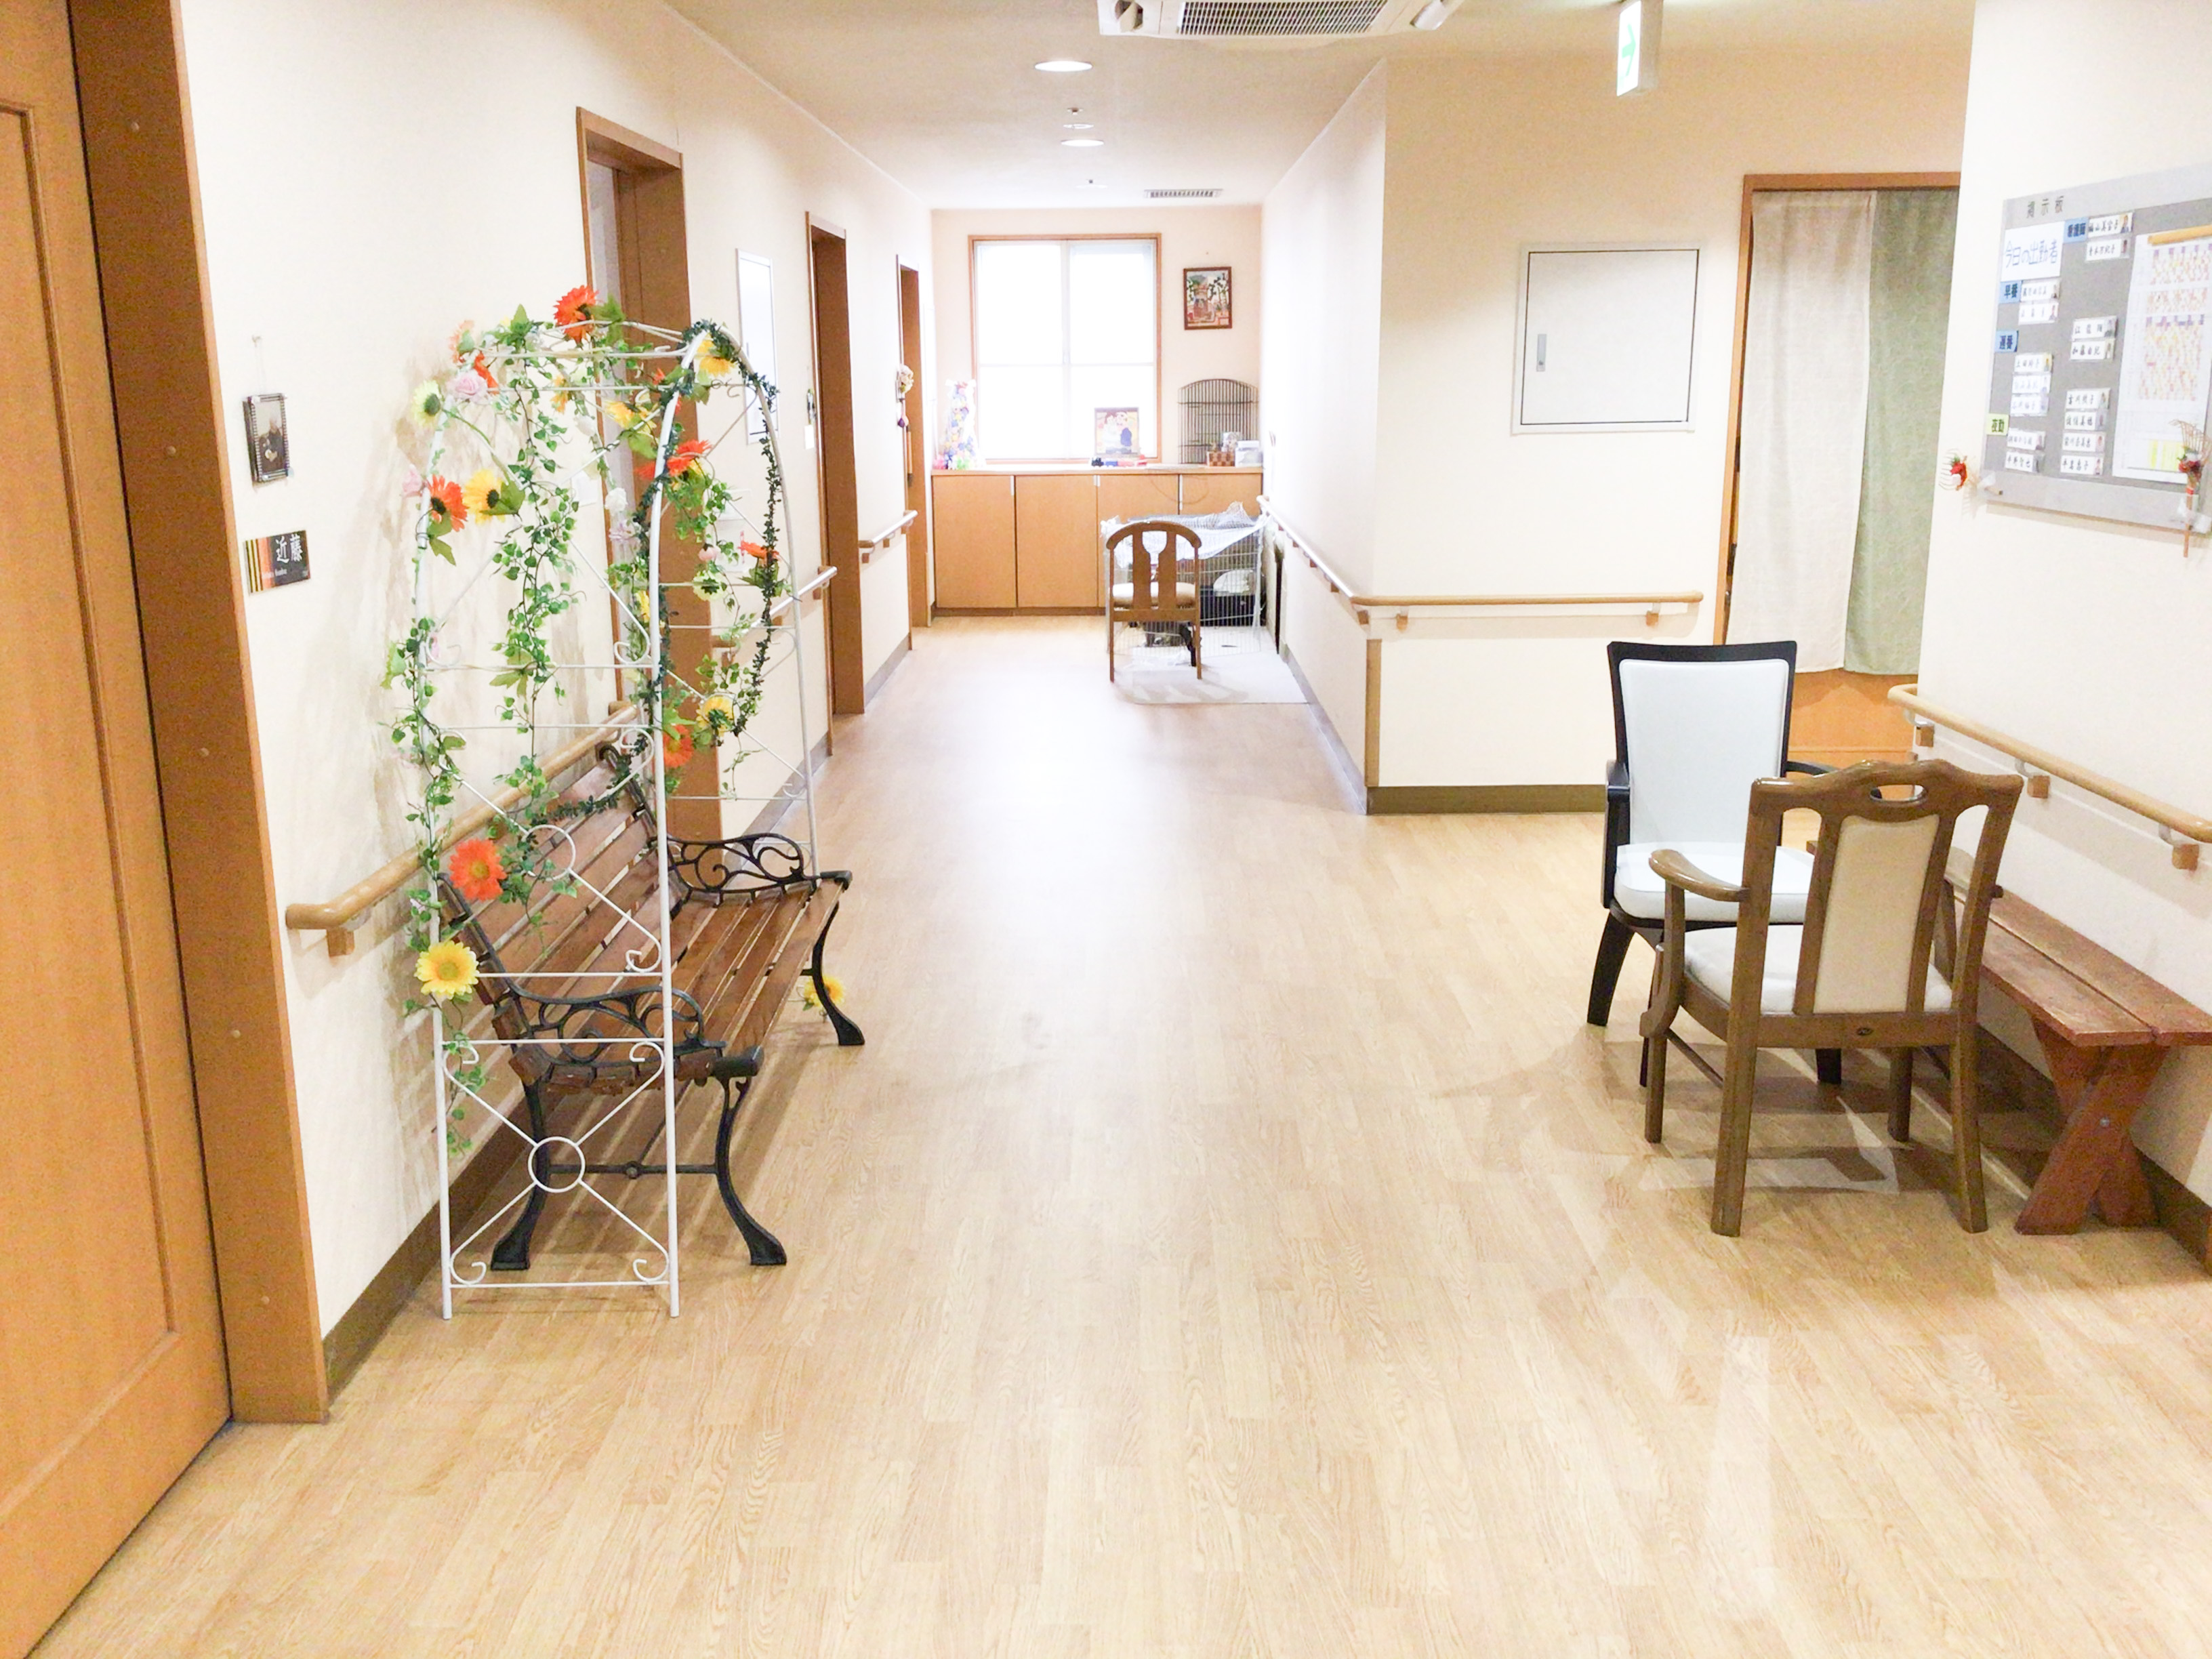 介護付き有料老人ホームベルデ名古屋栄生の施設画像